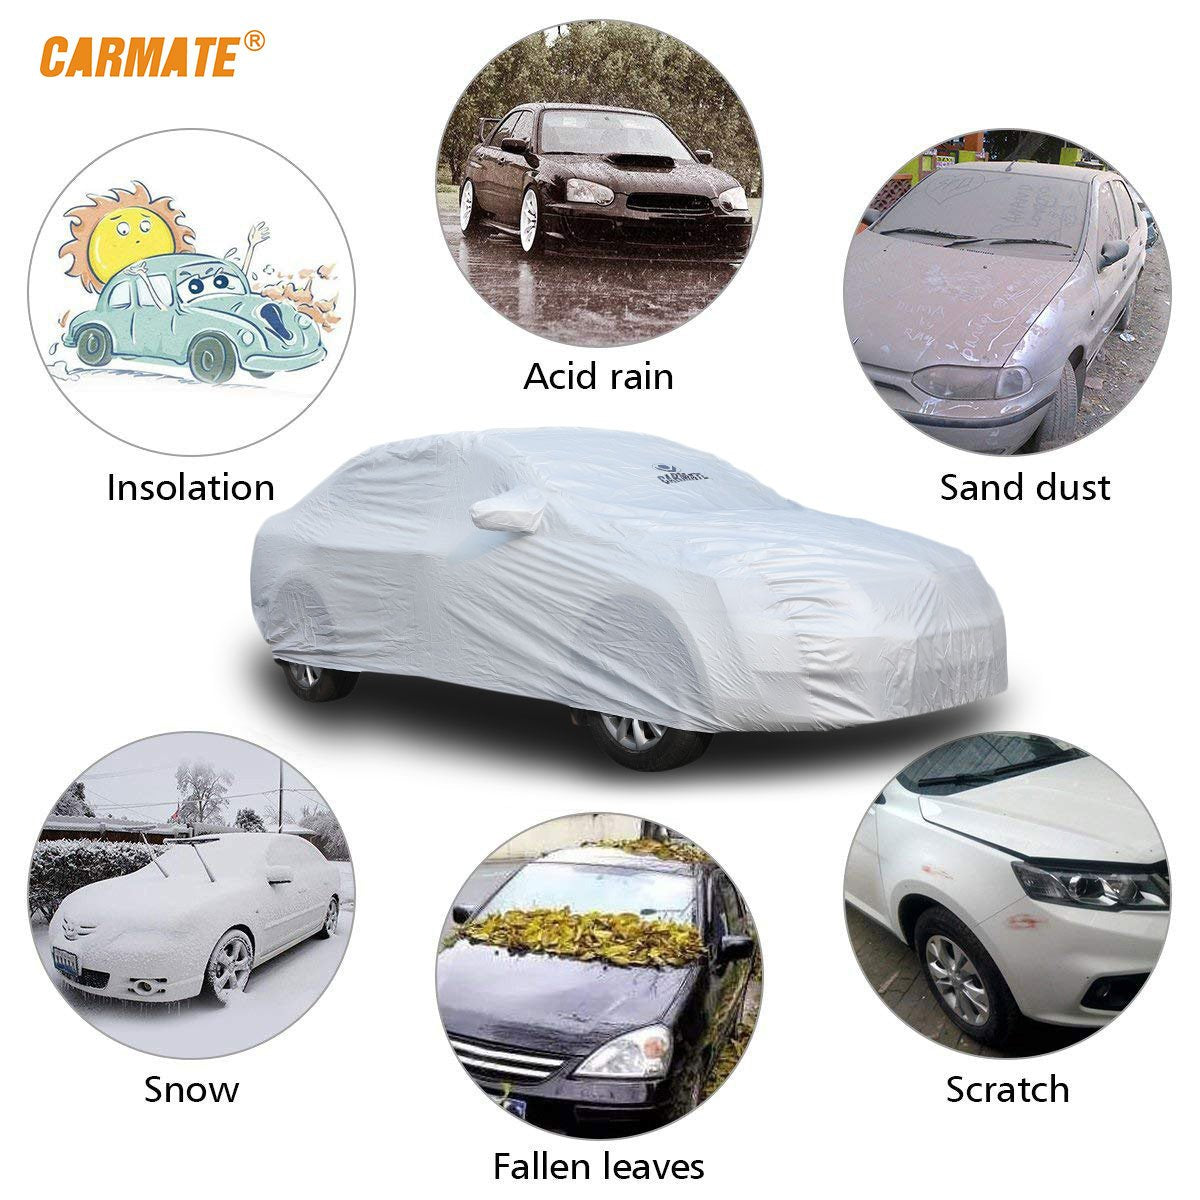 Carmate Premium Car Body Cover Silver Matty (Silver) for  Ford - Ecosport - CARMATE®